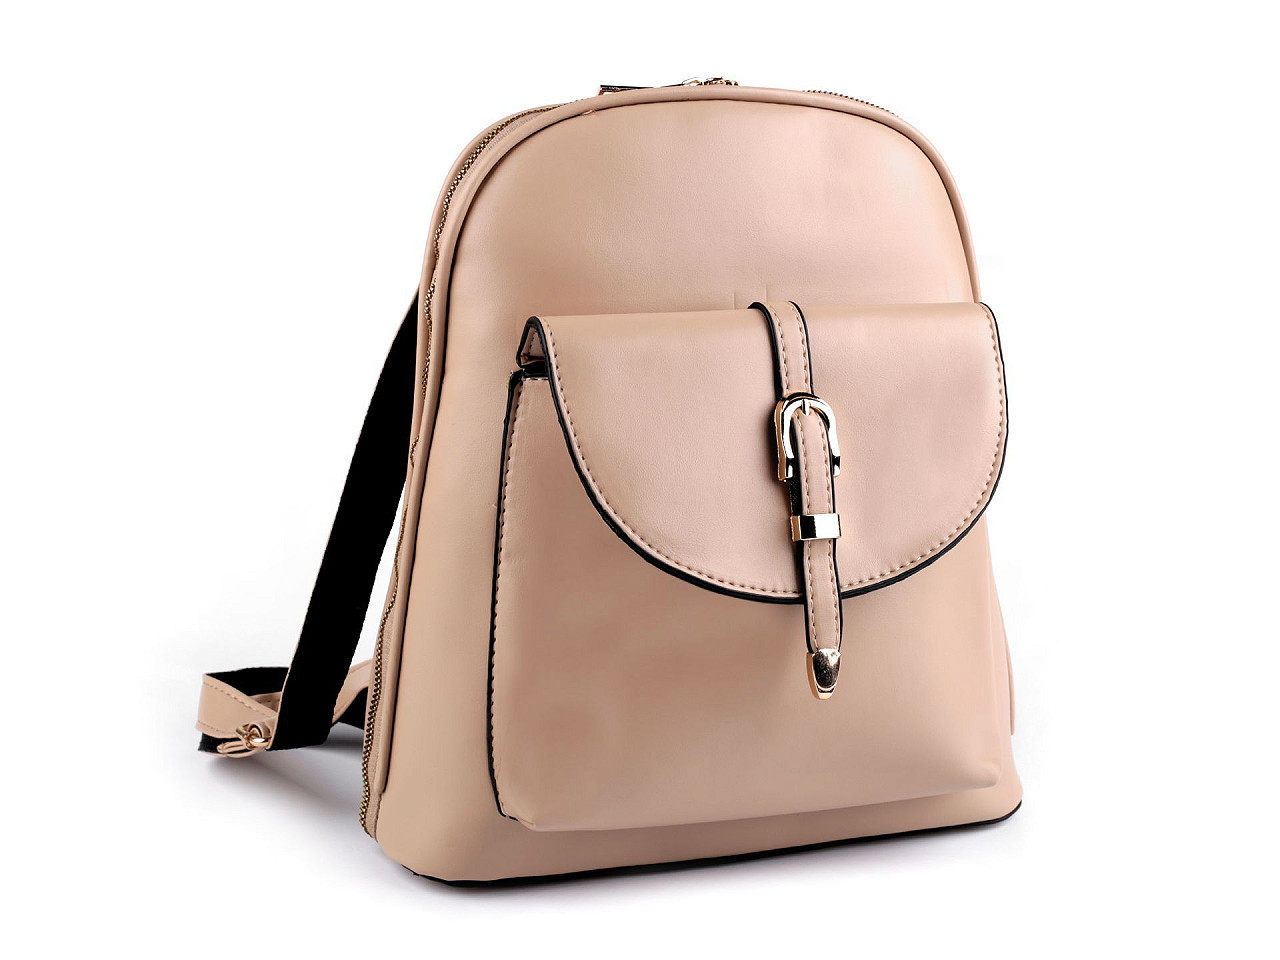 Dámský batoh / kabelka 2v1 27x31 cm, barva 1 béžová světlá